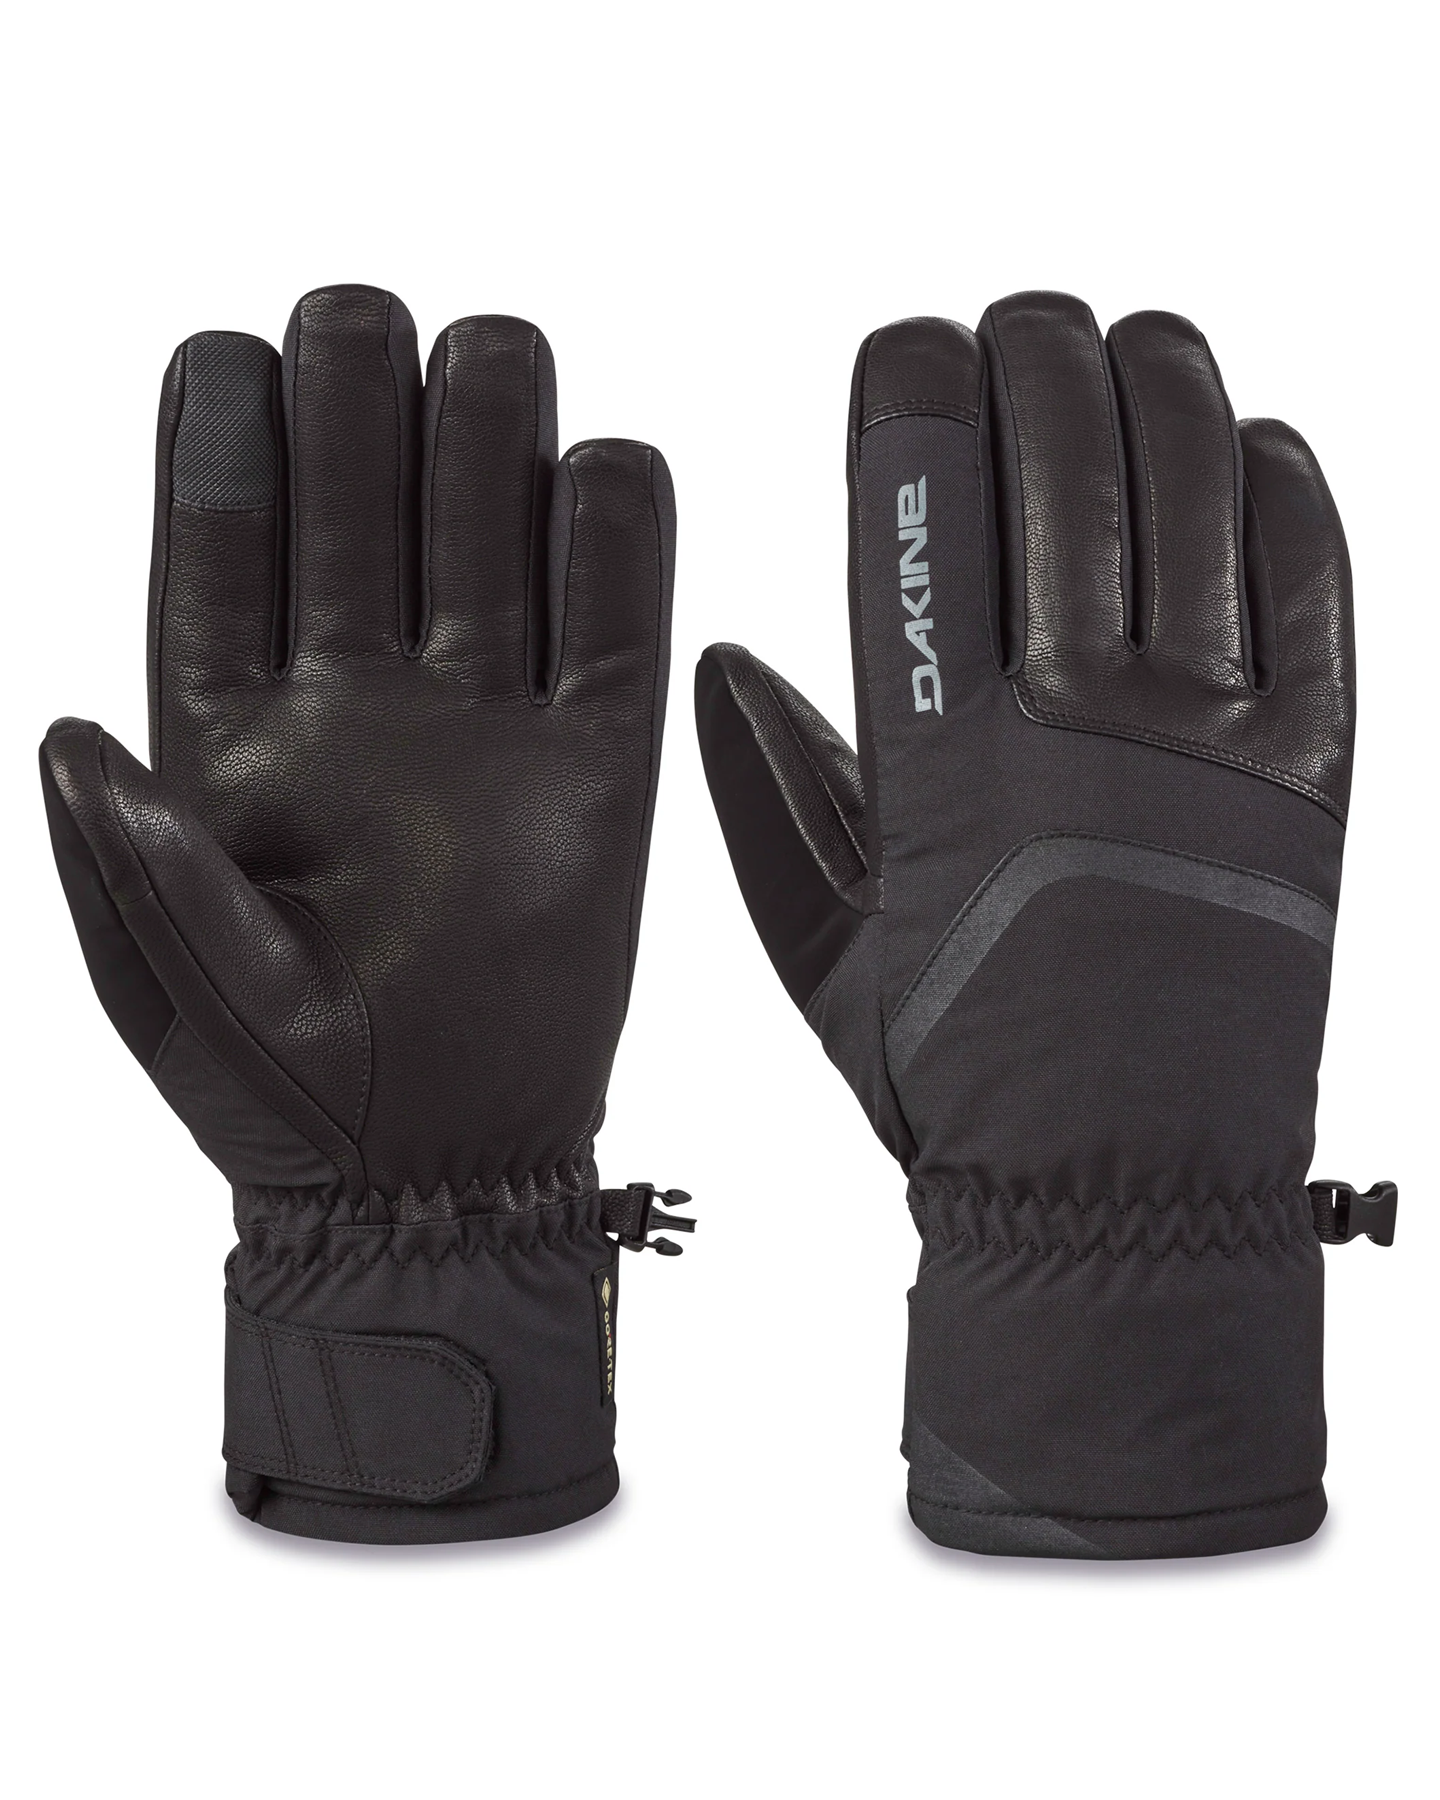 Dakine Men's Fillmore Gore-Tex Short Snow Gloves - Black Men's Snow Gloves & Mittens - SnowSkiersWarehouse